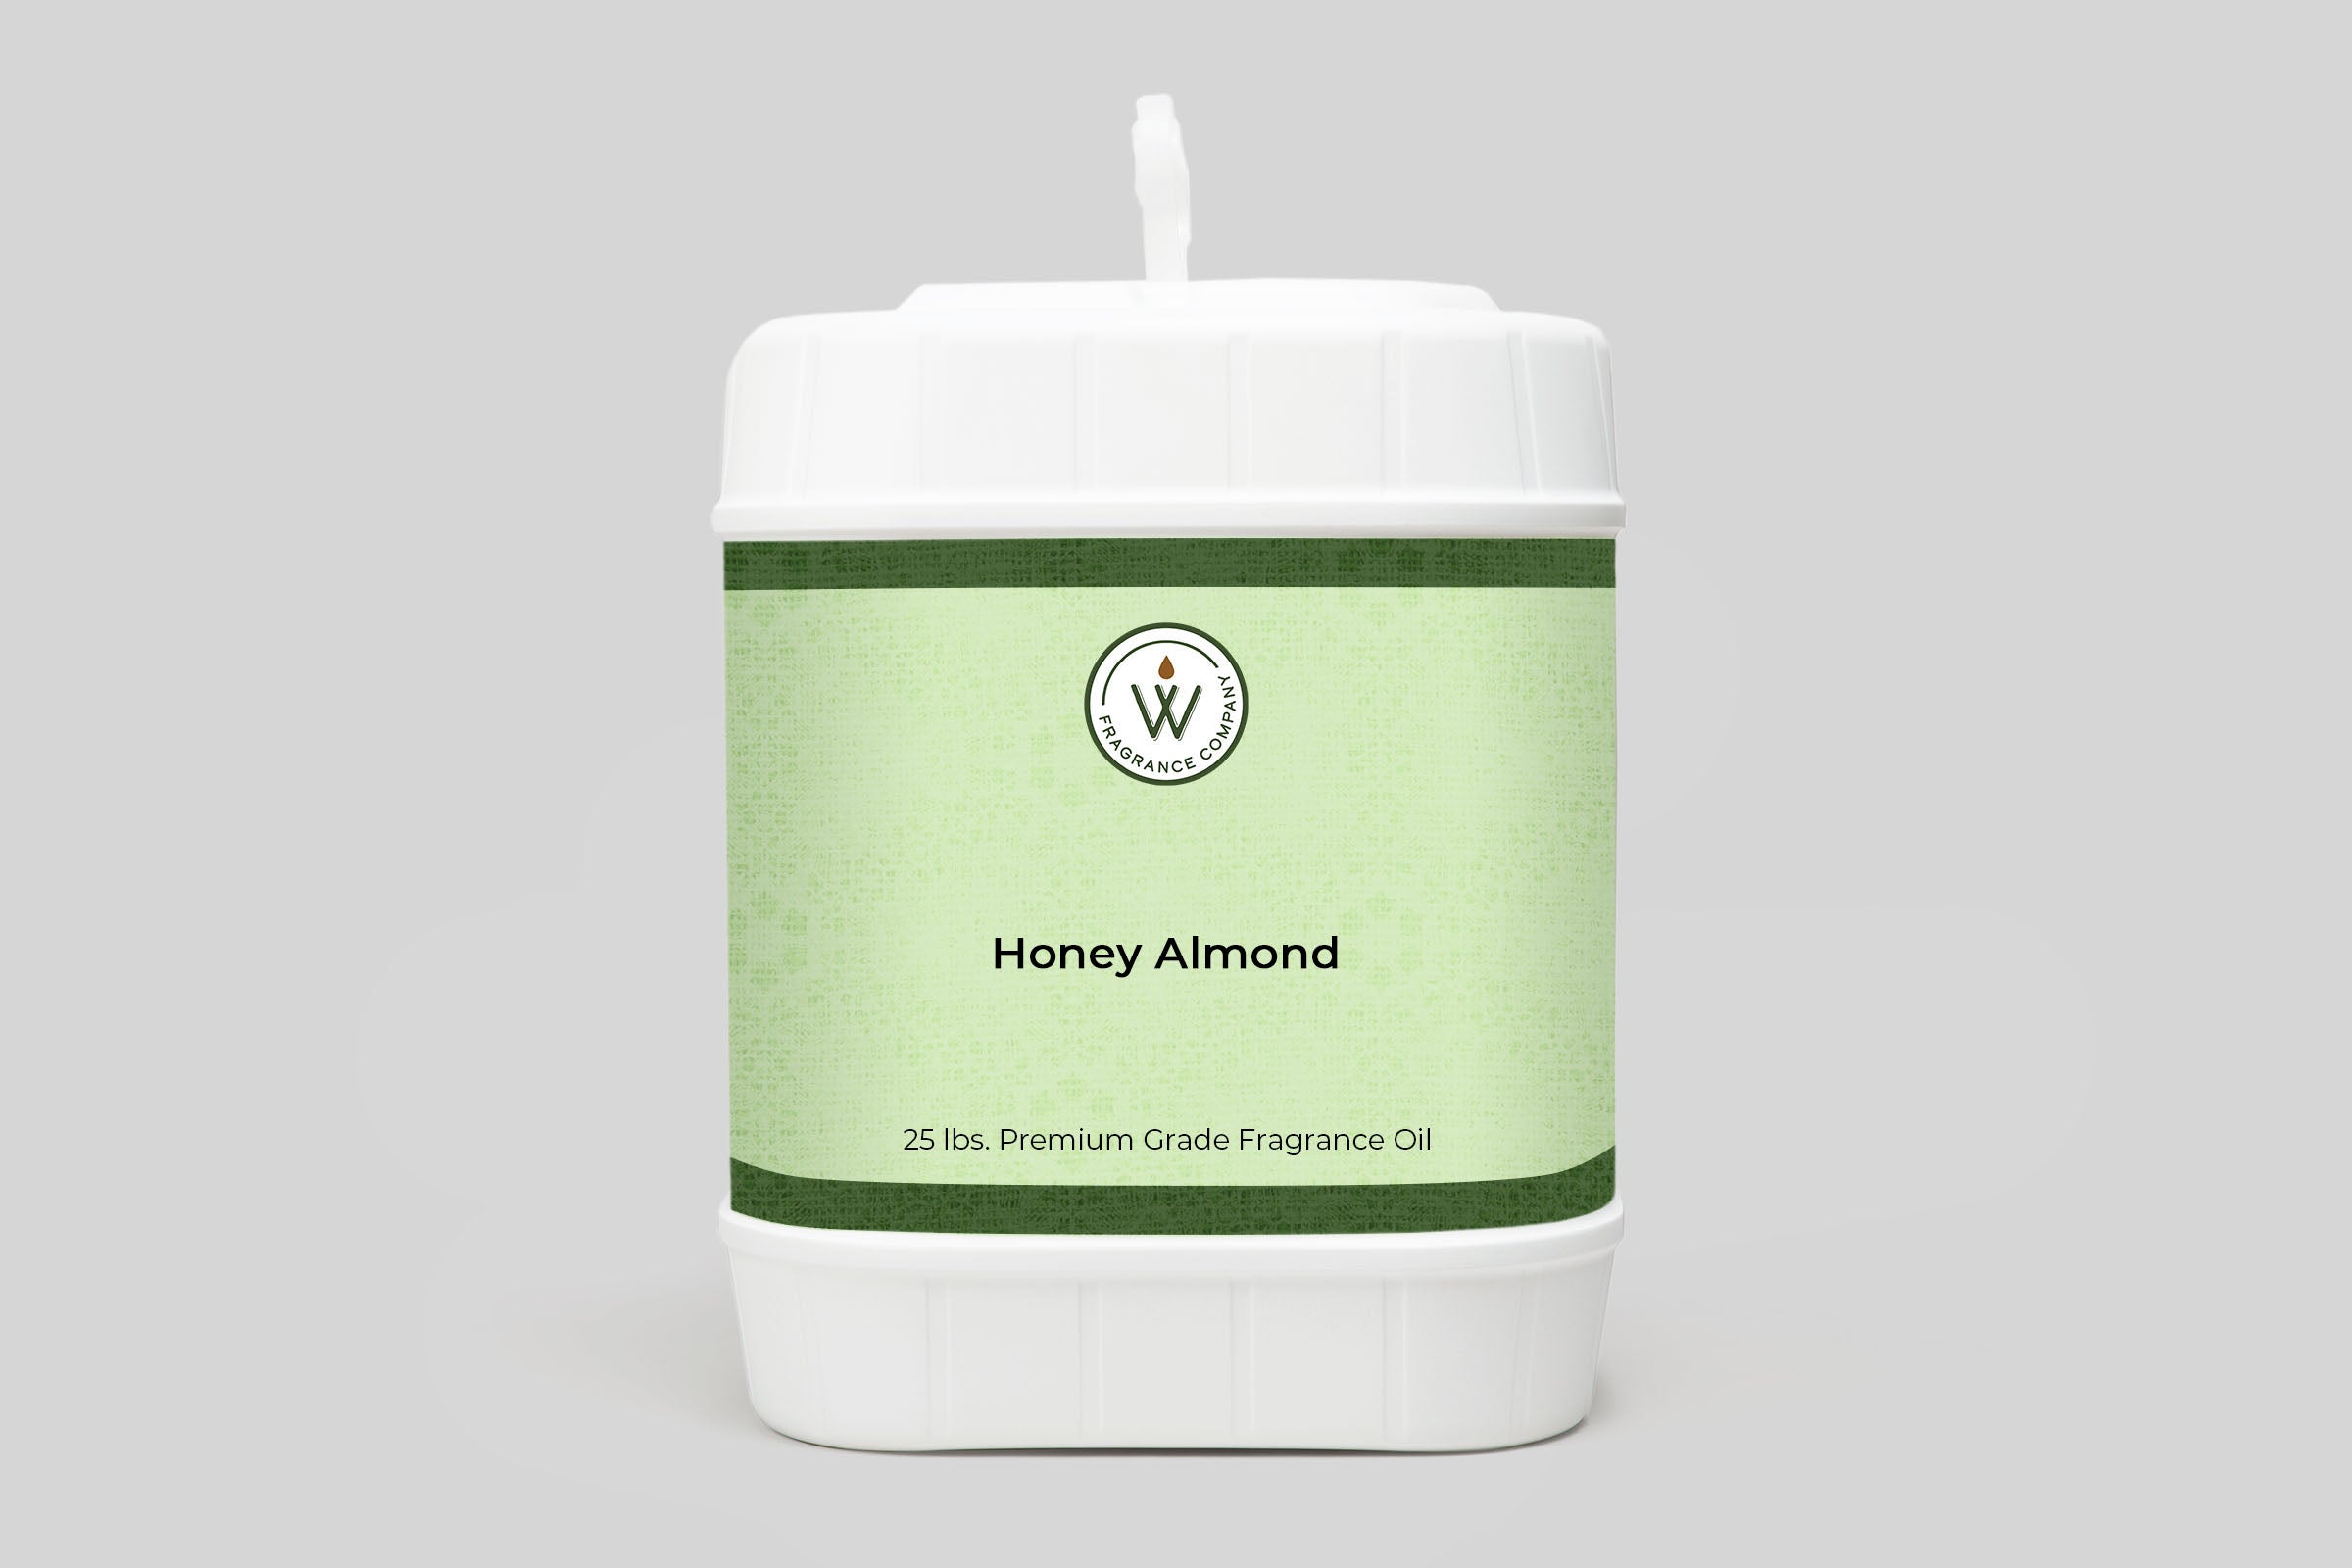 Honey Almond Fragrance Oil